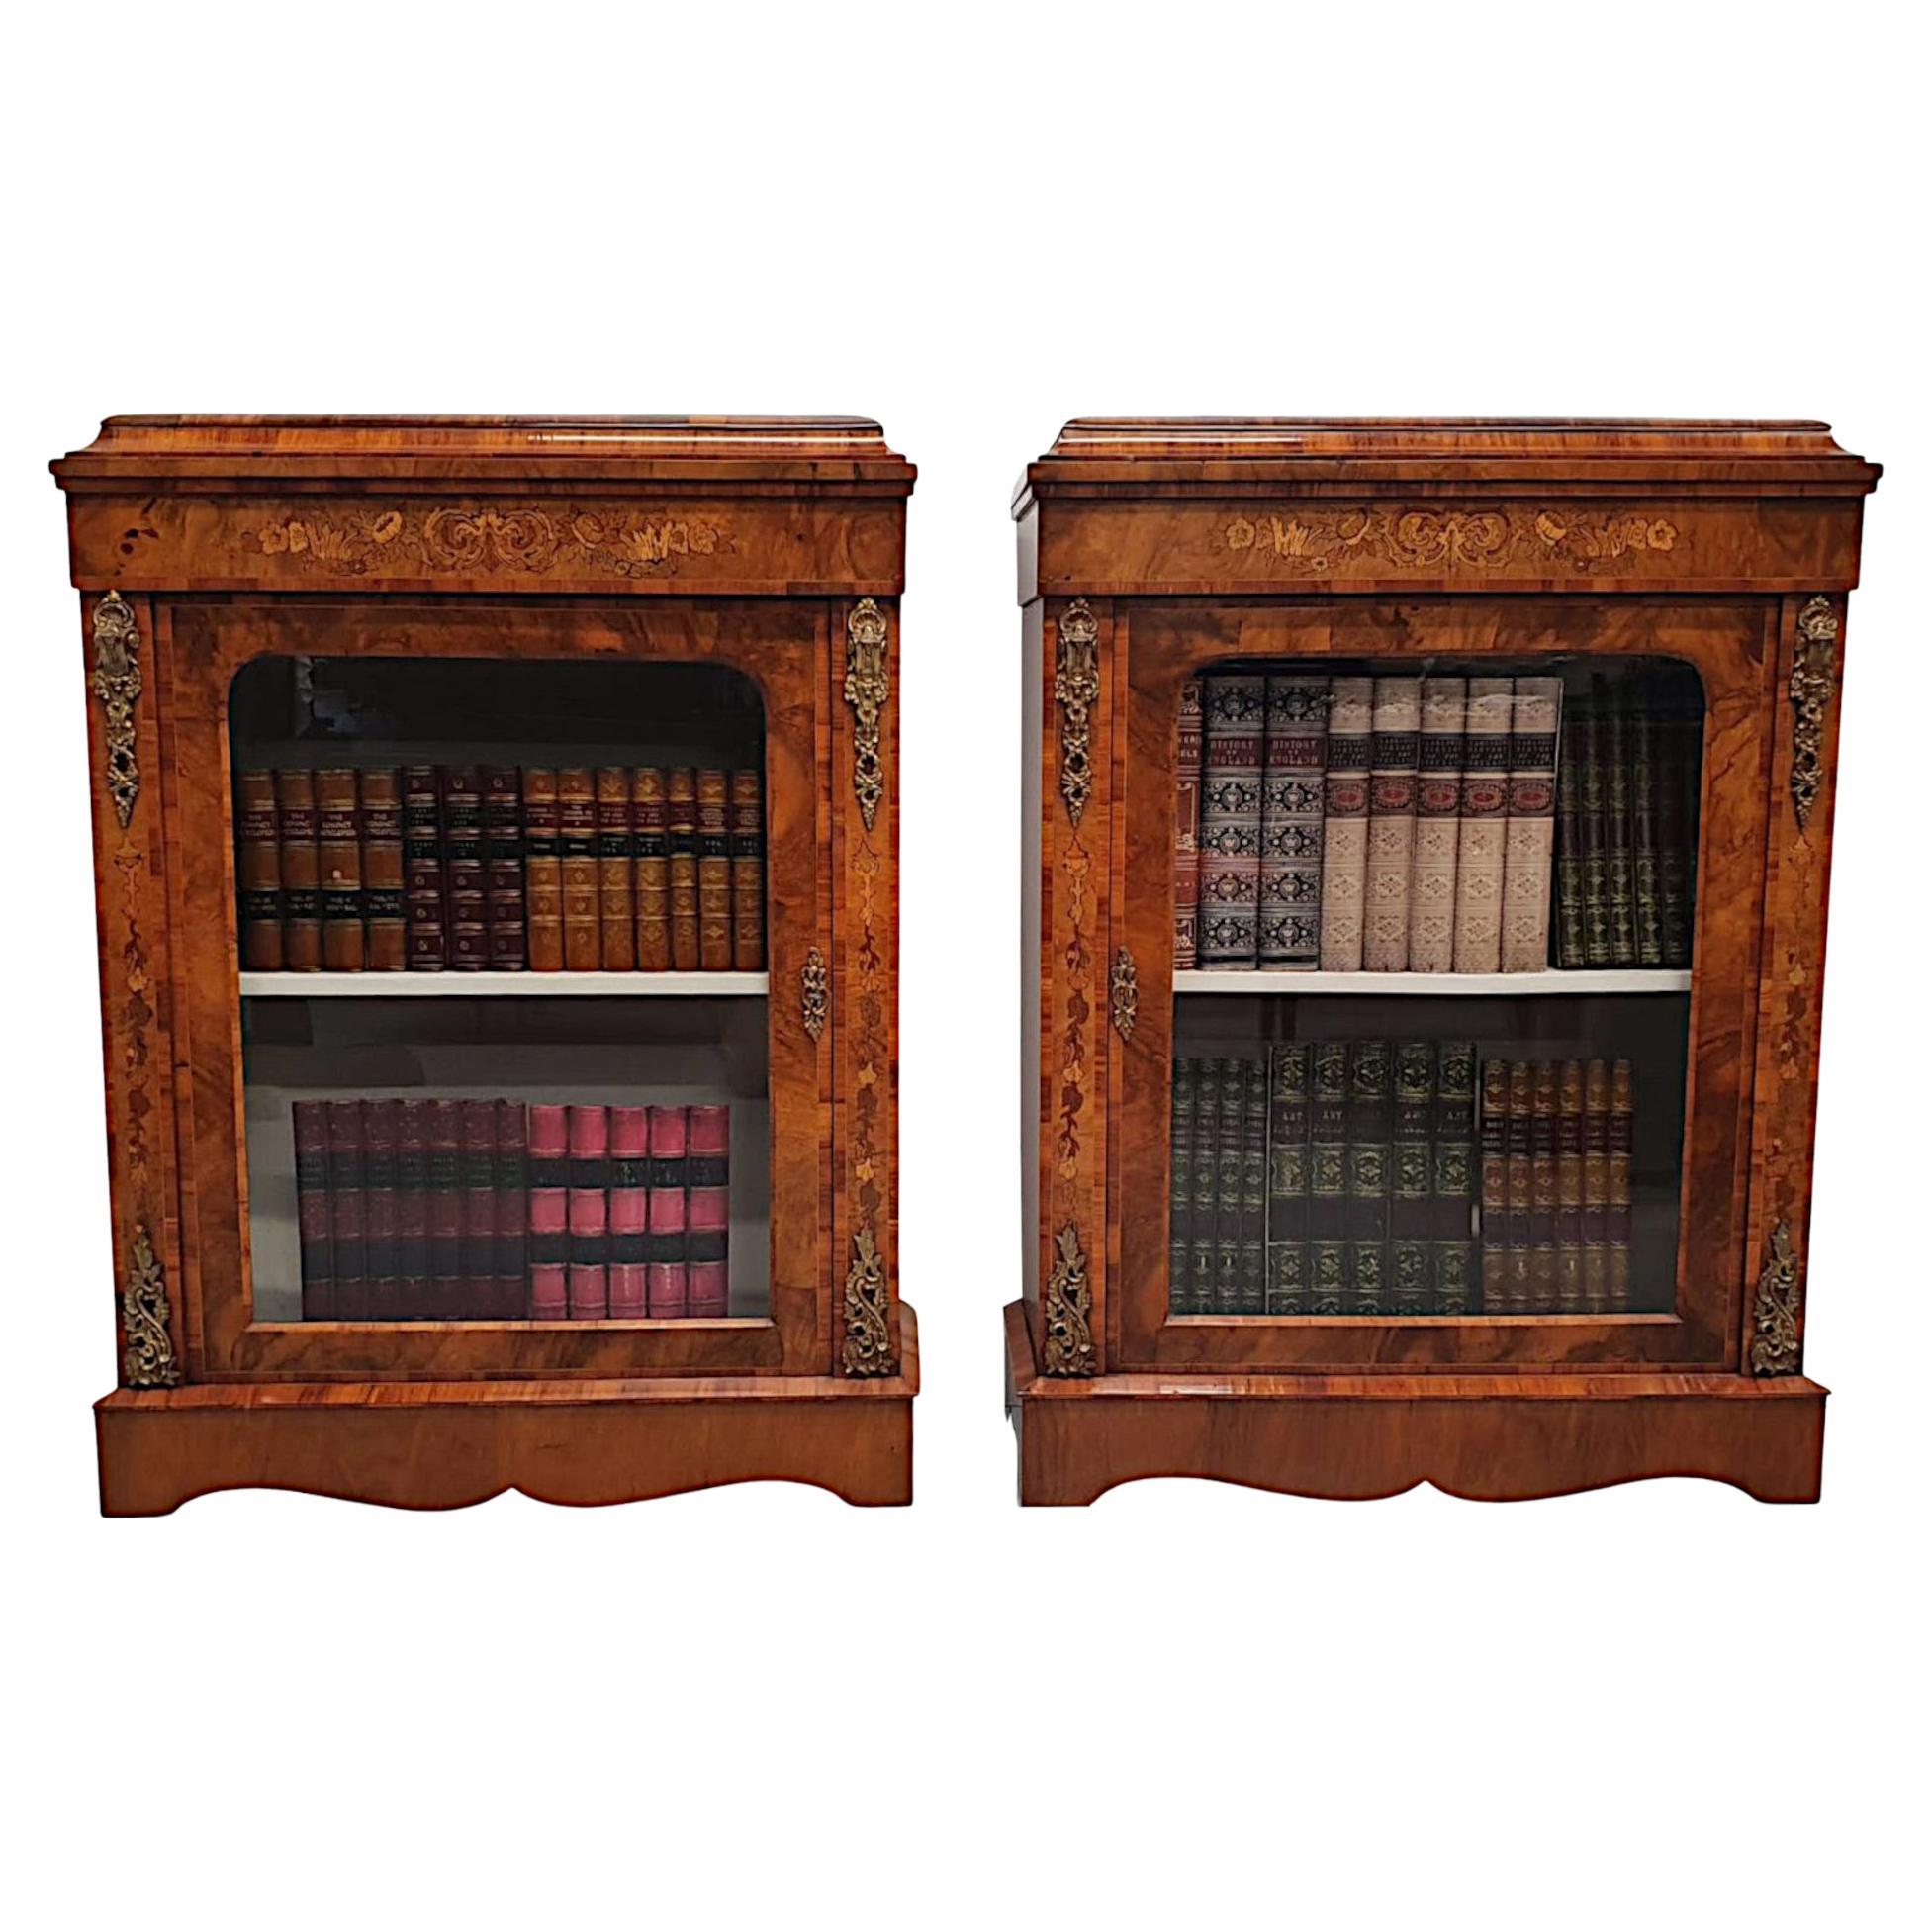 Ein außergewöhnliches Paar seltener Pfeilerschränke oder Bücherregale aus dem 19. Jahrhundert